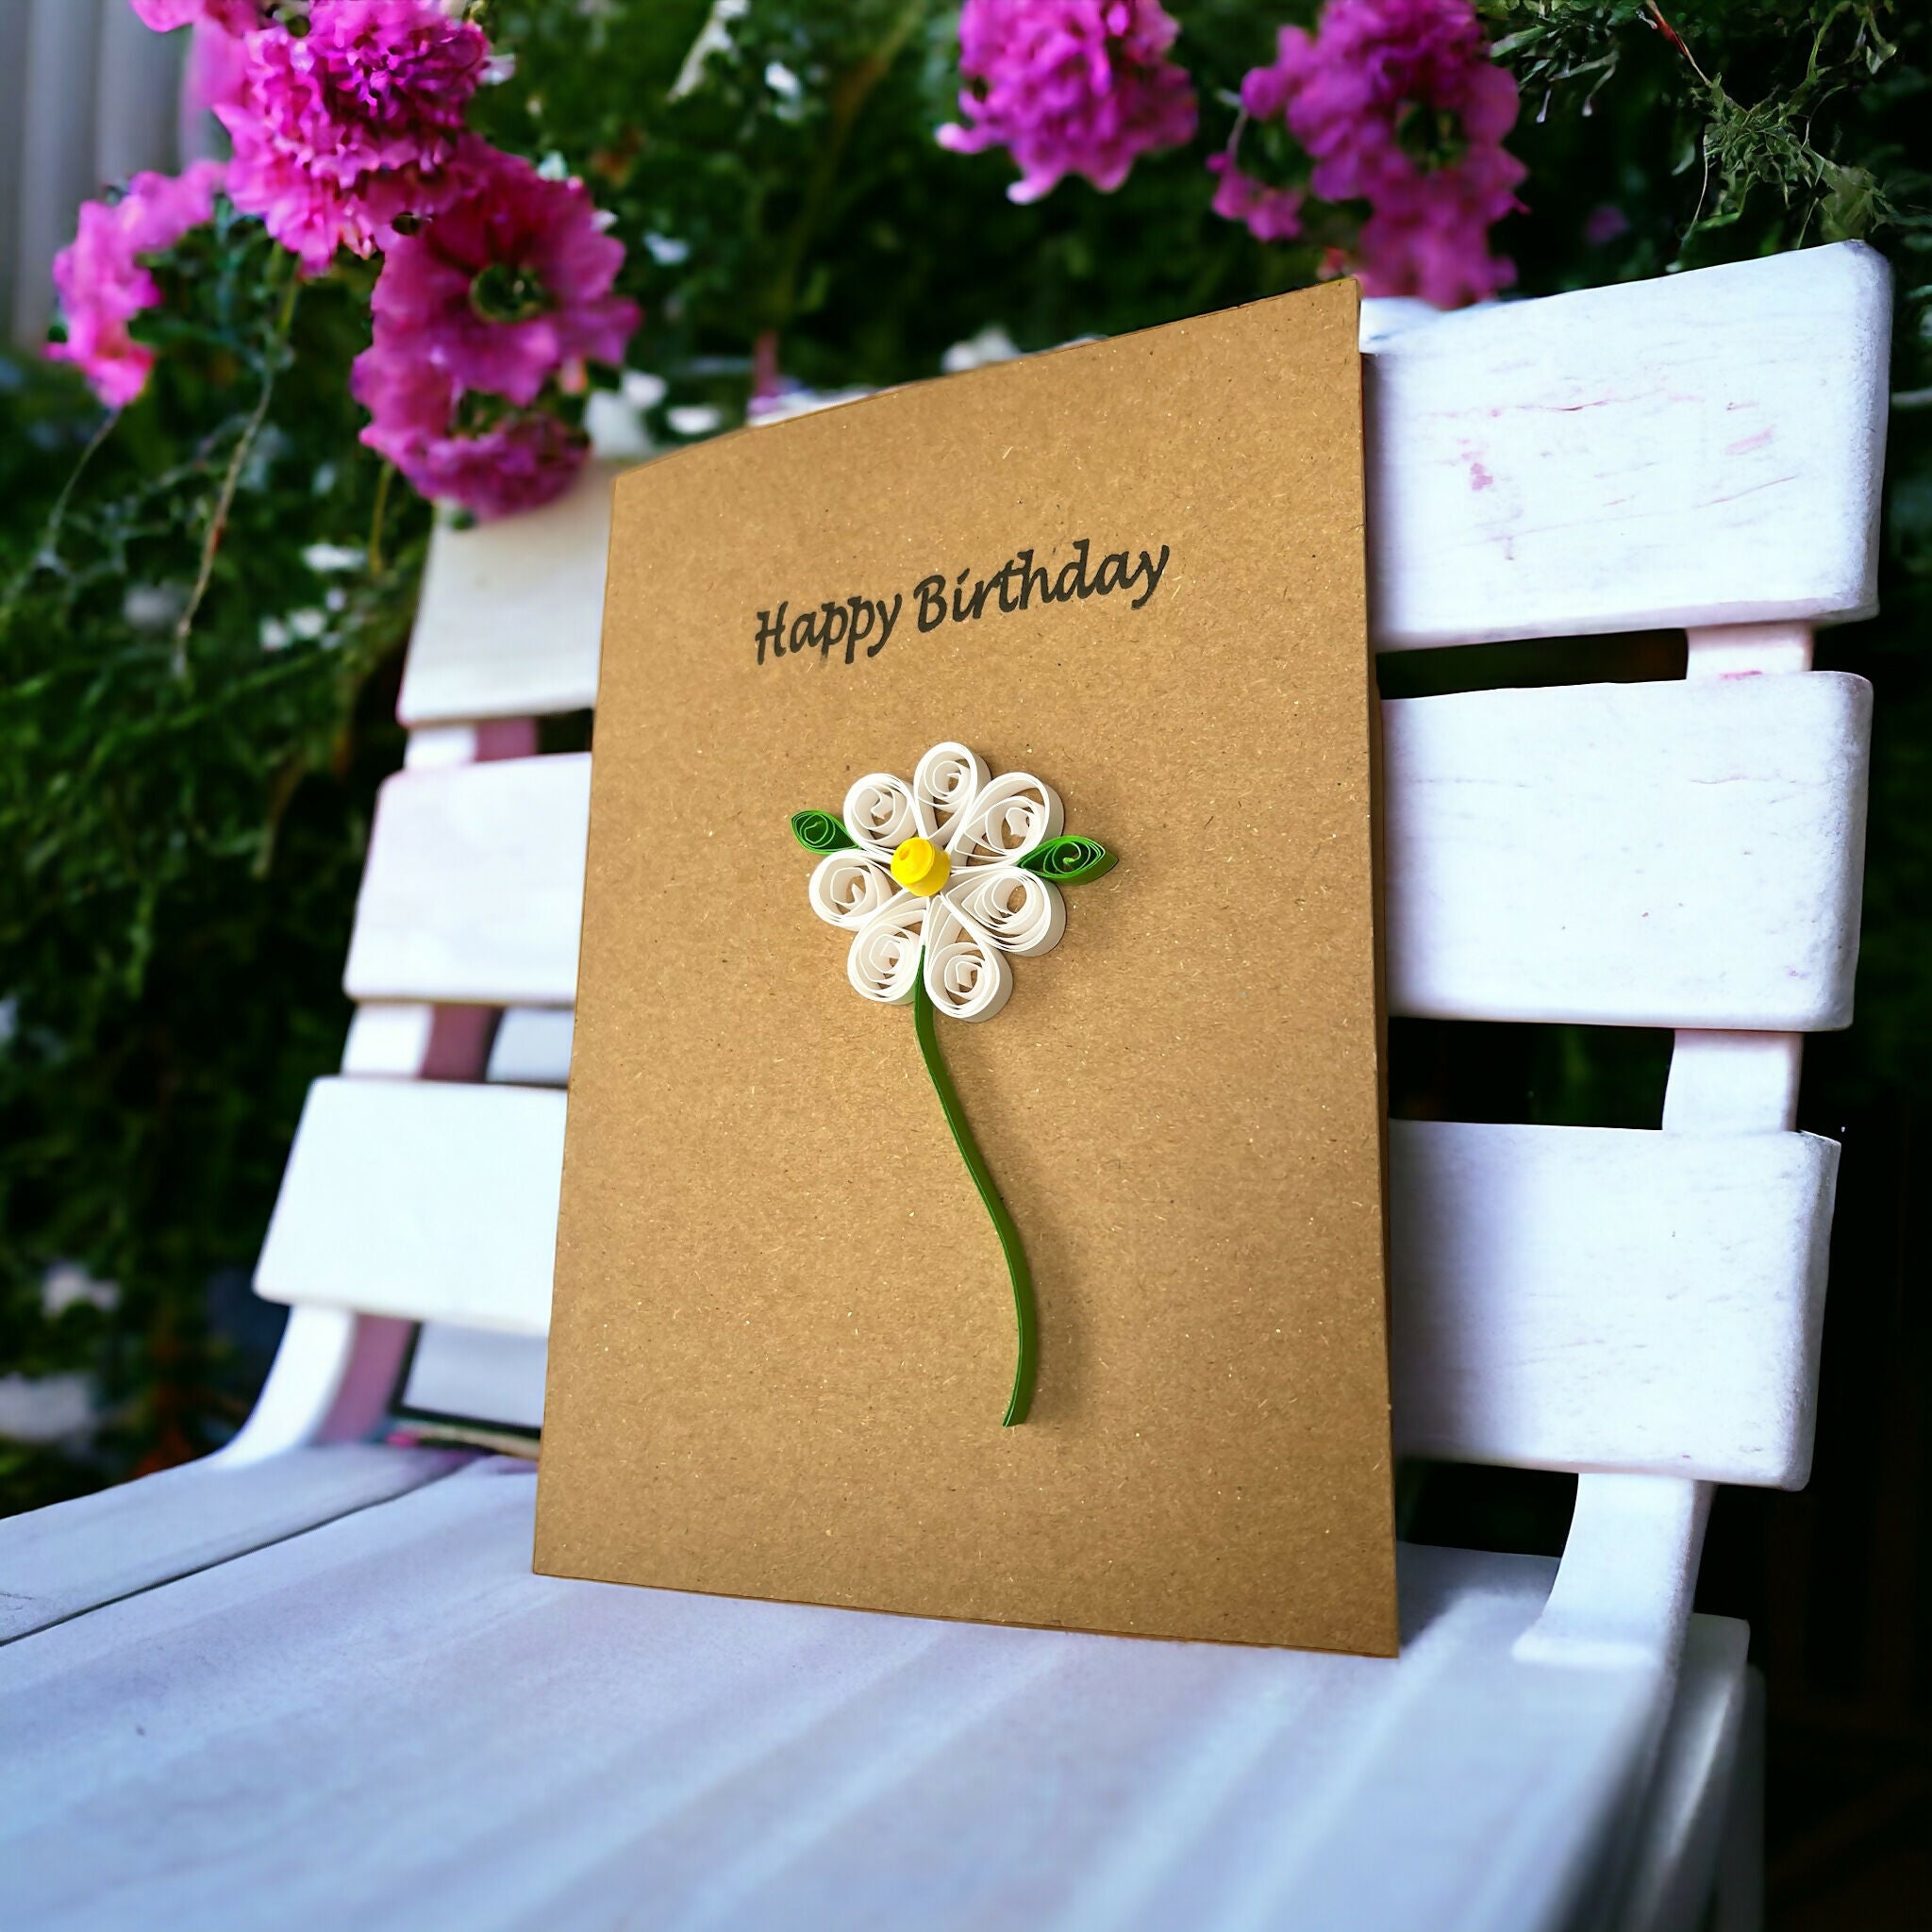 Happy birthday daisy card